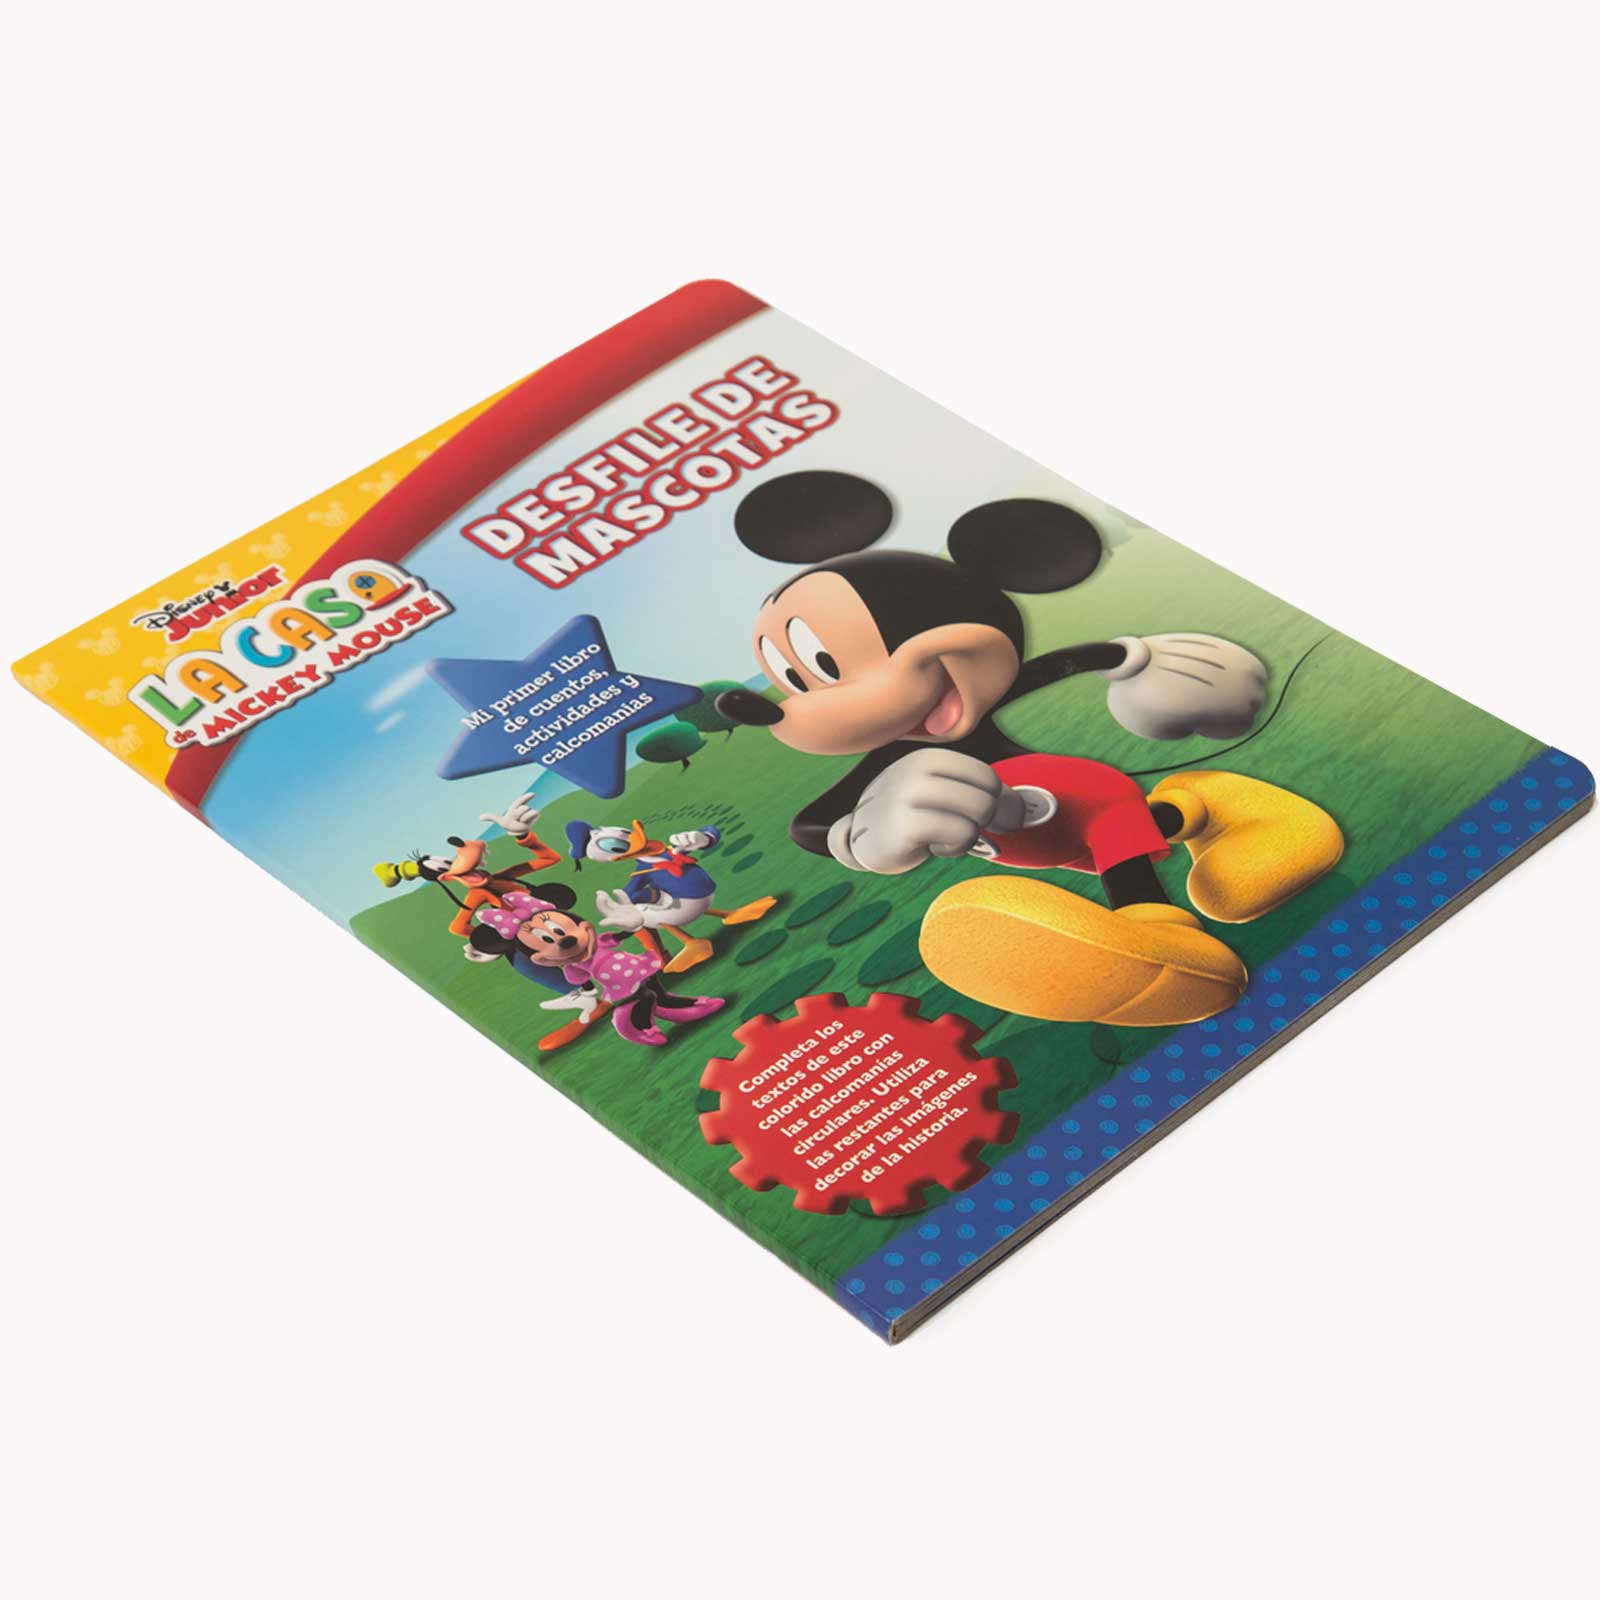 La casa de Mickey Mouse (Libro educativo Disney con actividades y pegatinas)